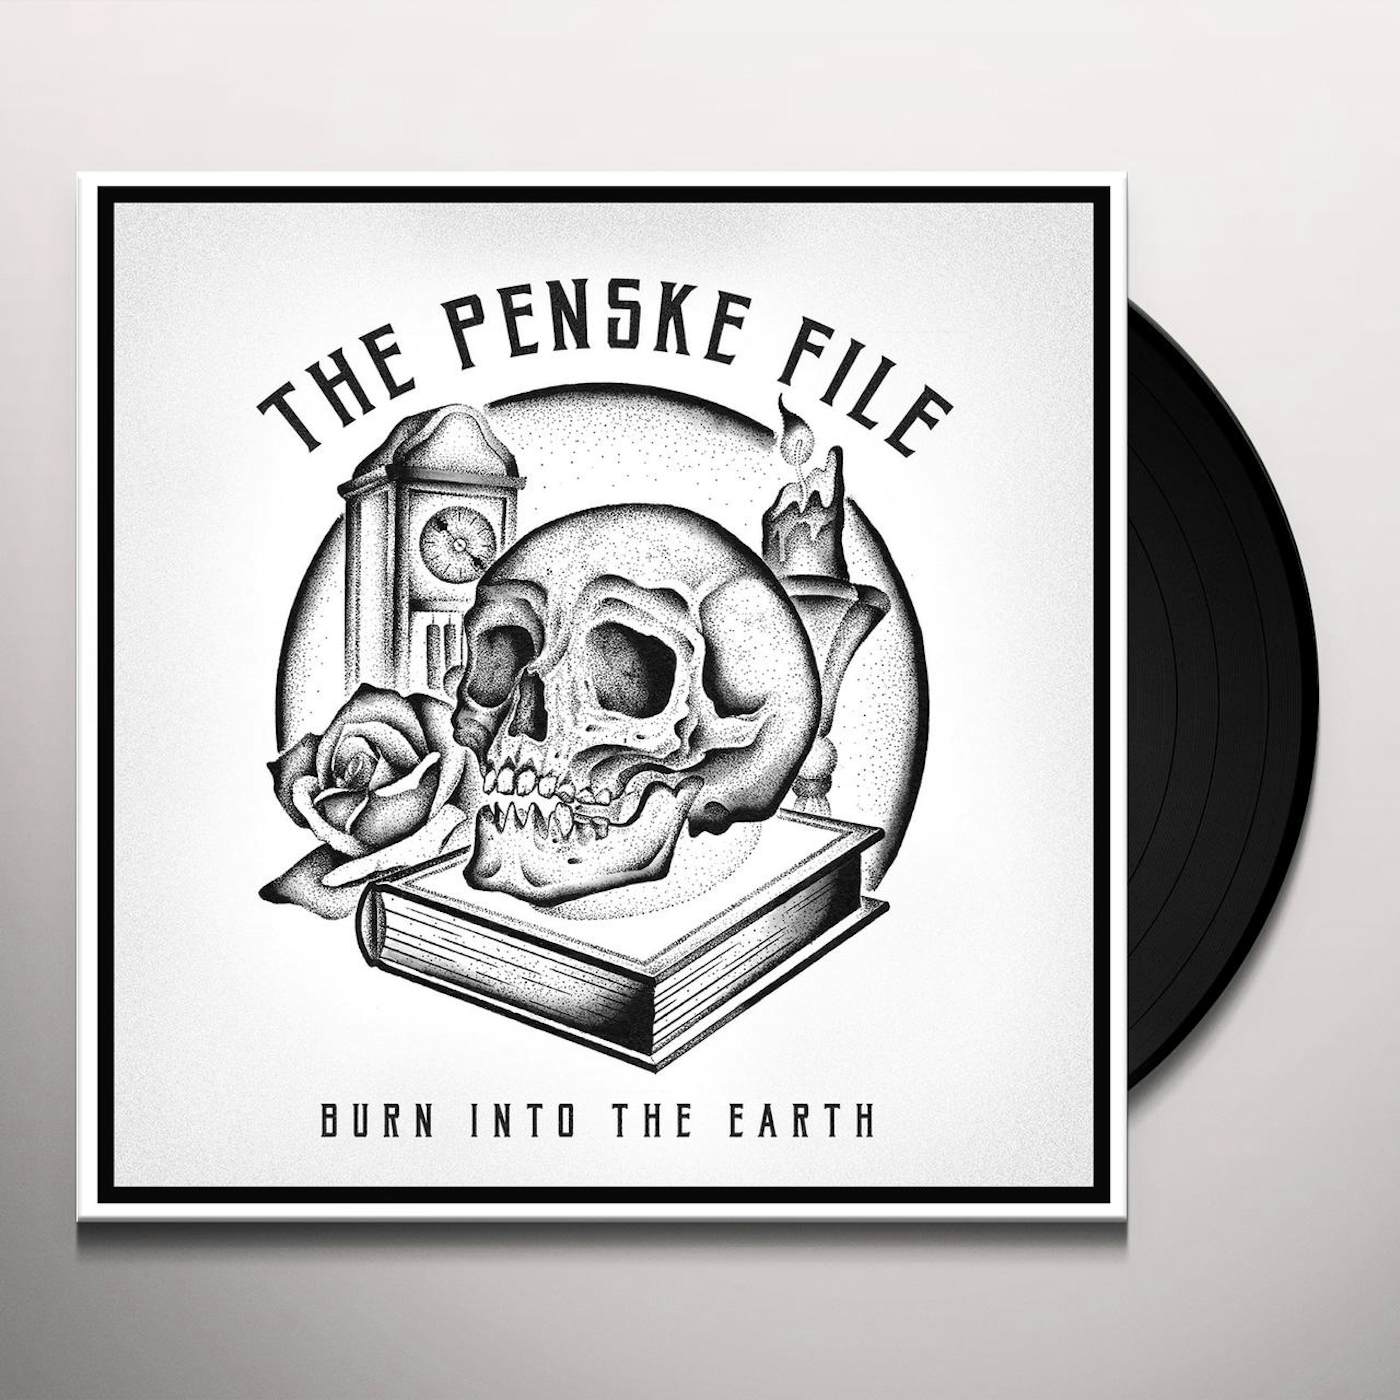 The Penske File Burn Into The Earth Vinyl Record